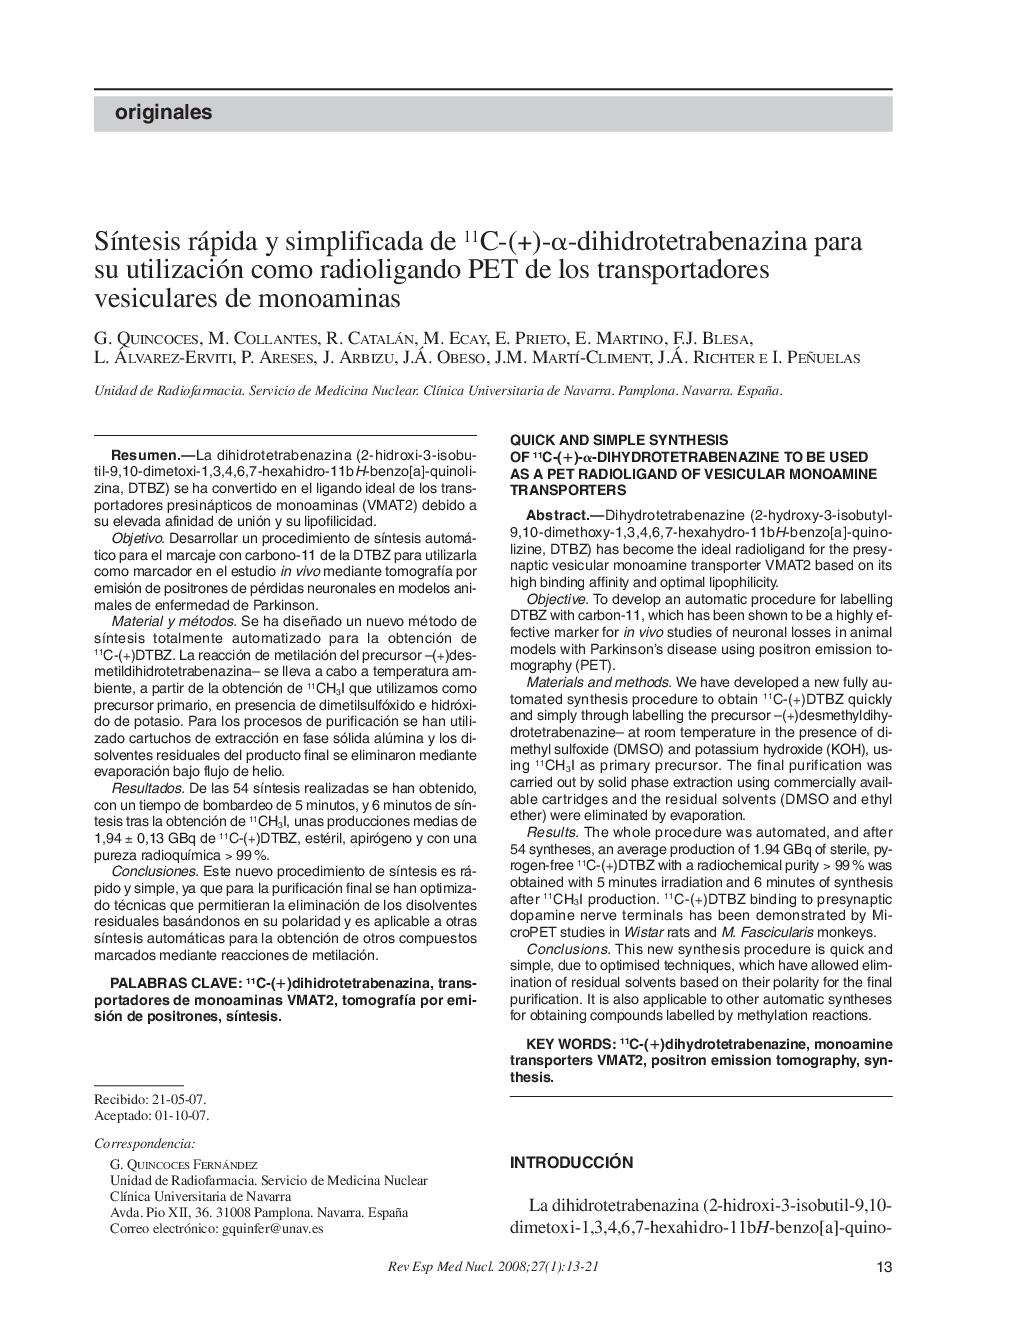 SÃ­ntesis rápida y simplificada de 11C-(+)-Î±-dihidrotetrabenazina para su utilización como radioligando PET de los transportadores vesiculares de monoaminas